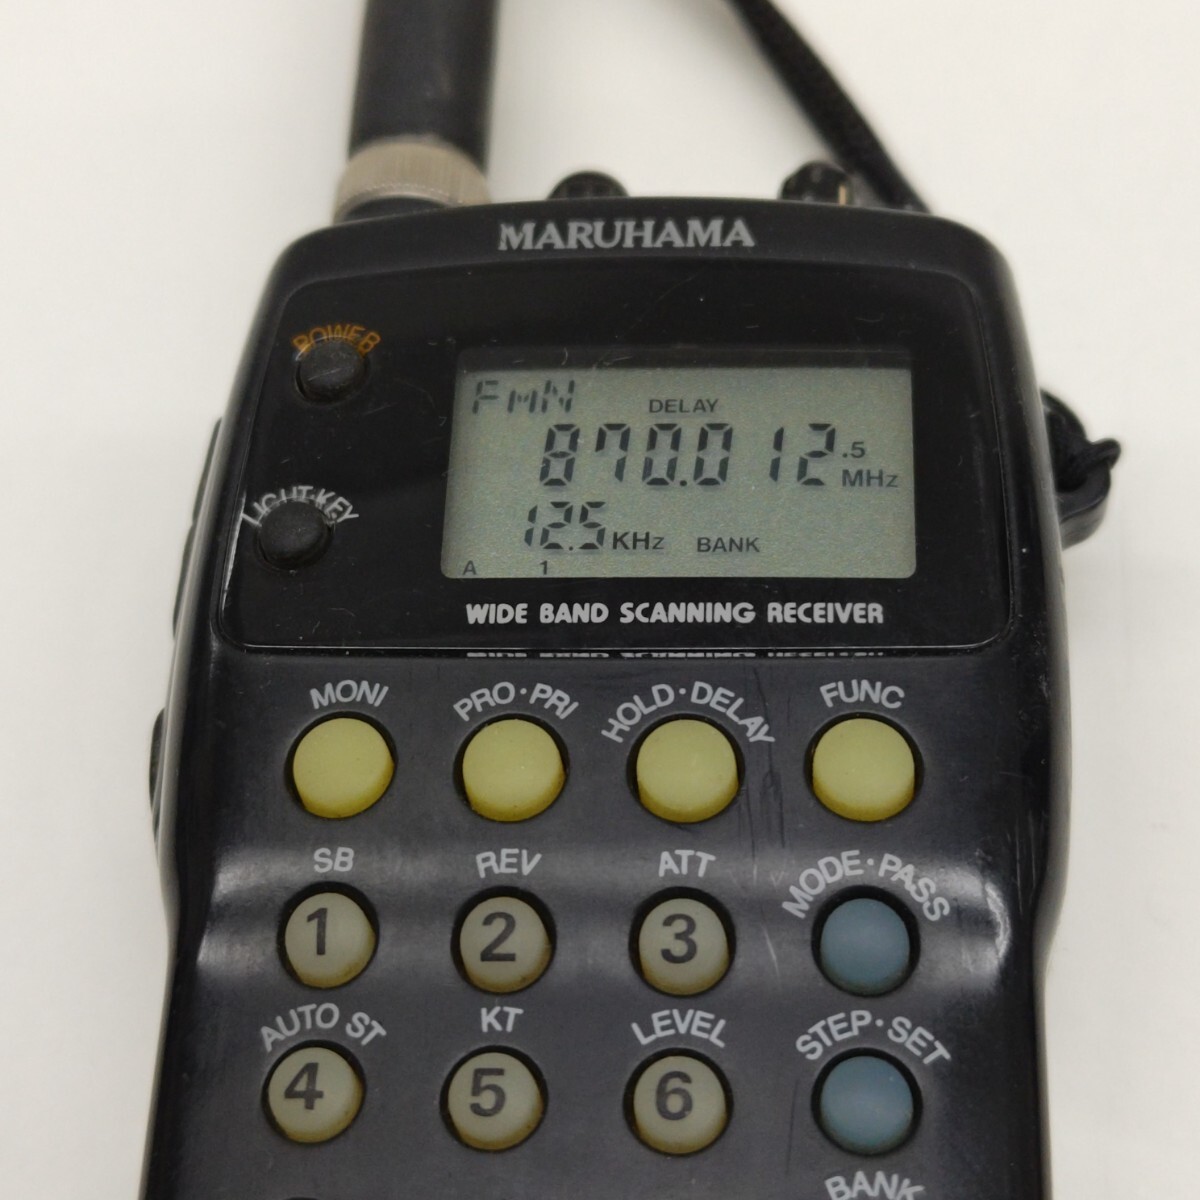 [ утиль ]MARUHAMA RT-623DX широкий obi район приемник 2 частота одновременно прием подслушивание контейнер обнаружение контейнер .